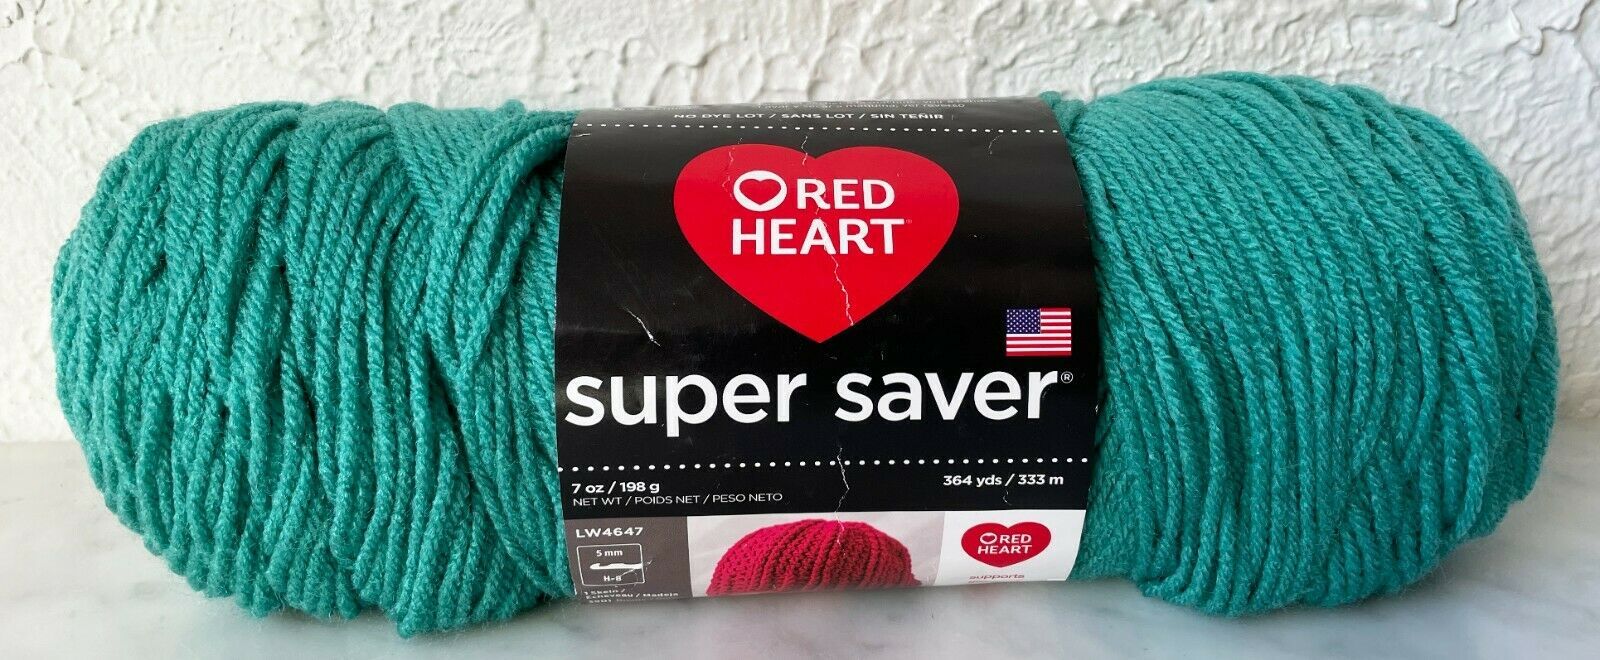 Red Heart Super Saver Yarn, White 0311, Medium 4 - 1 skein, 7 oz